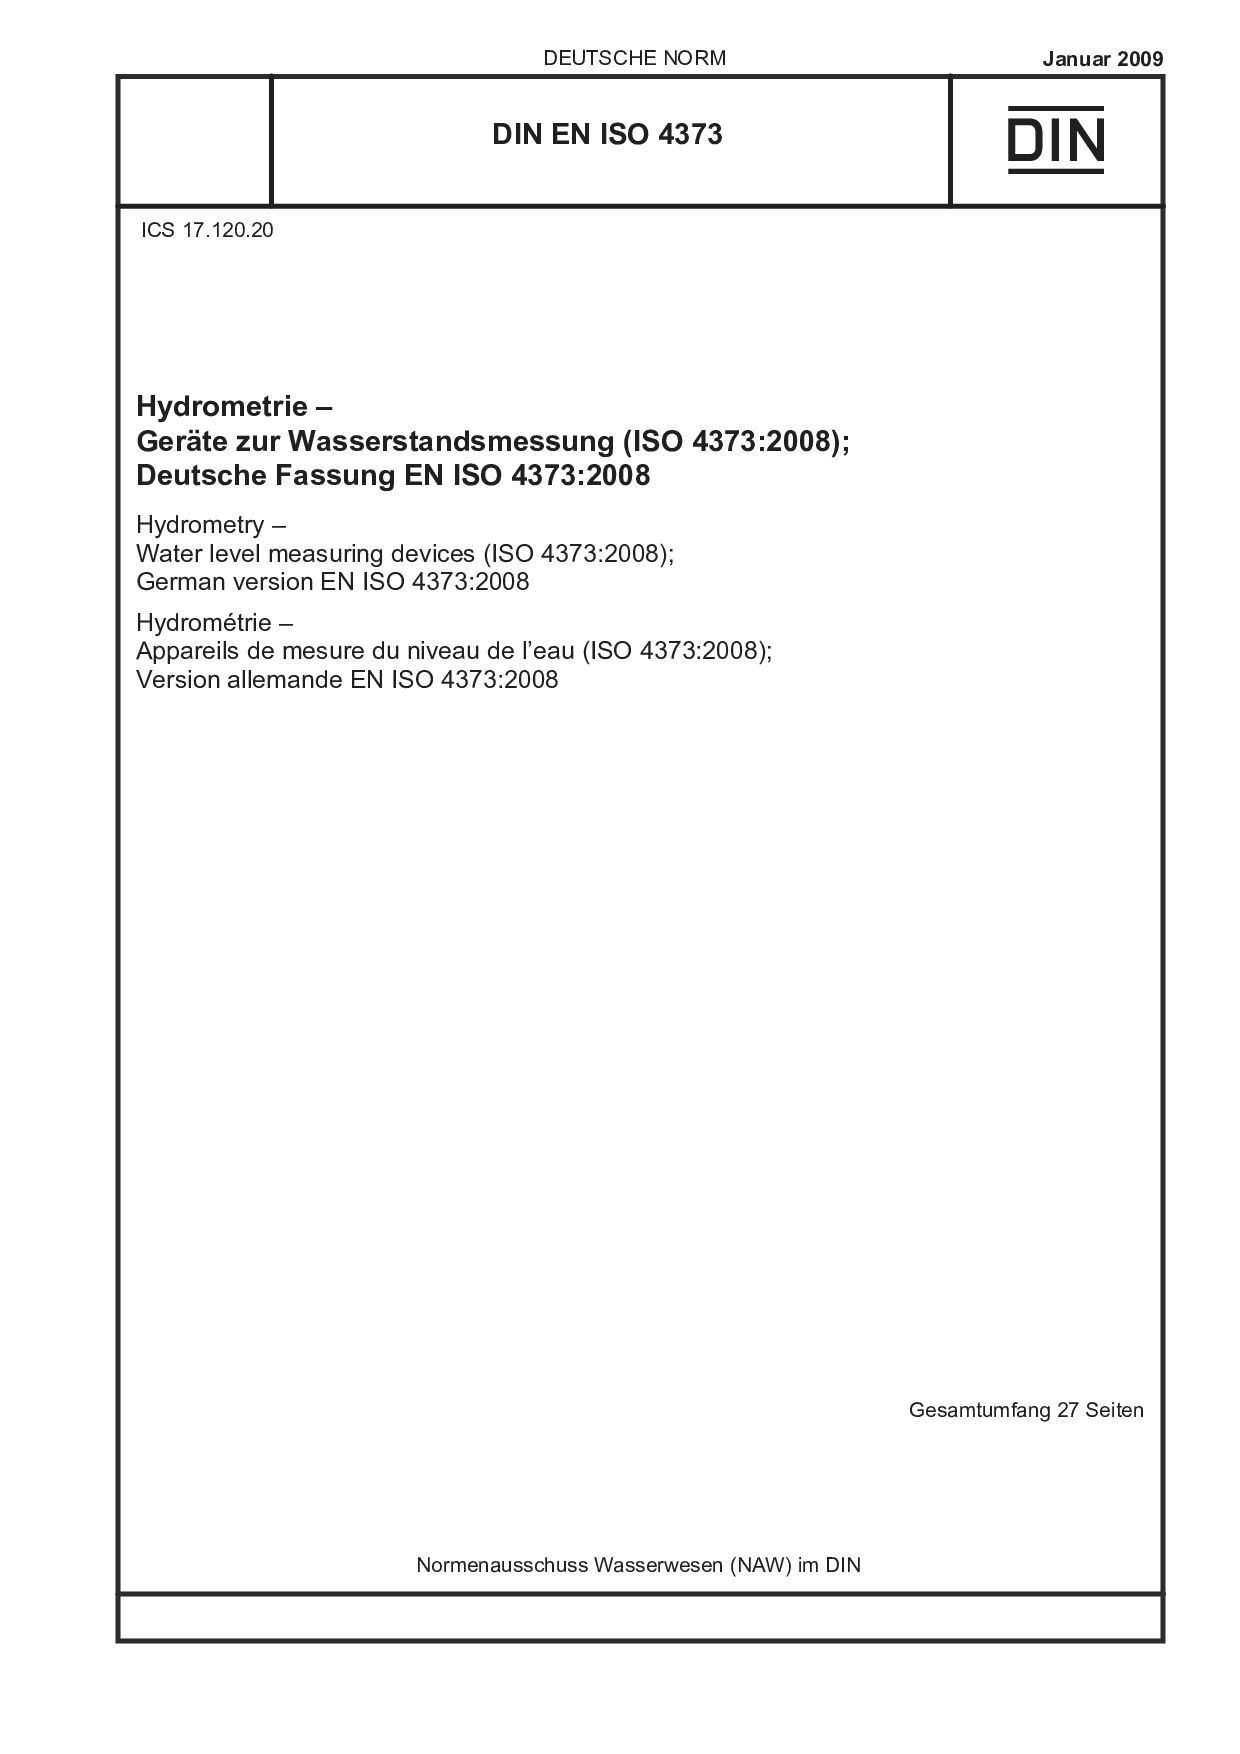 DIN EN ISO 4373:2009封面图